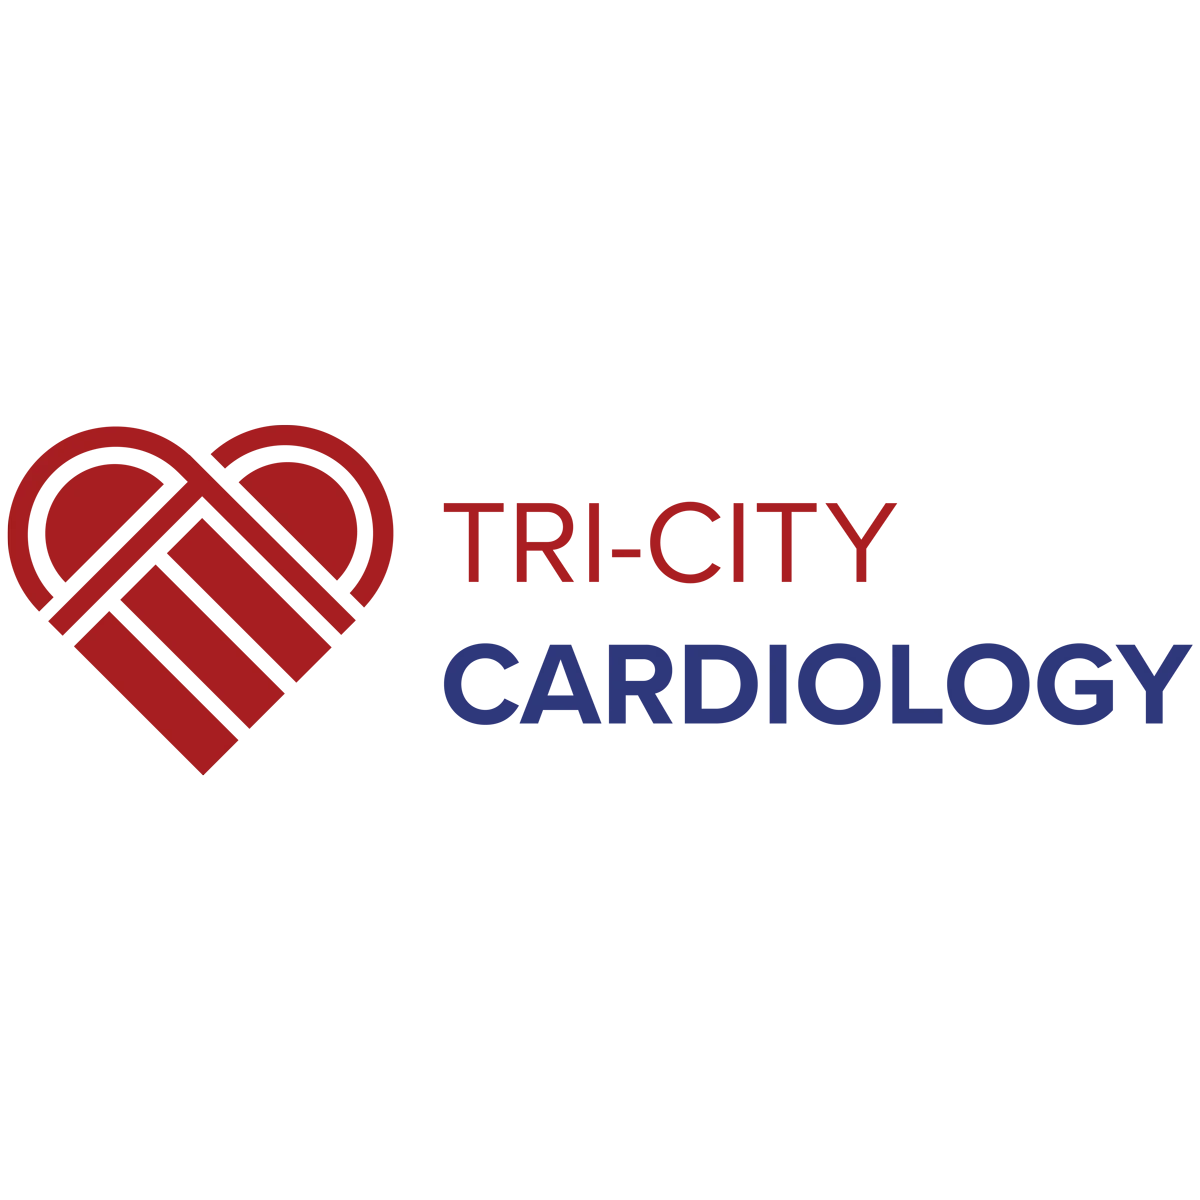 Tri-City Cardiology - Gilbert, AZ 85297 - (480)835-6100 | ShowMeLocal.com